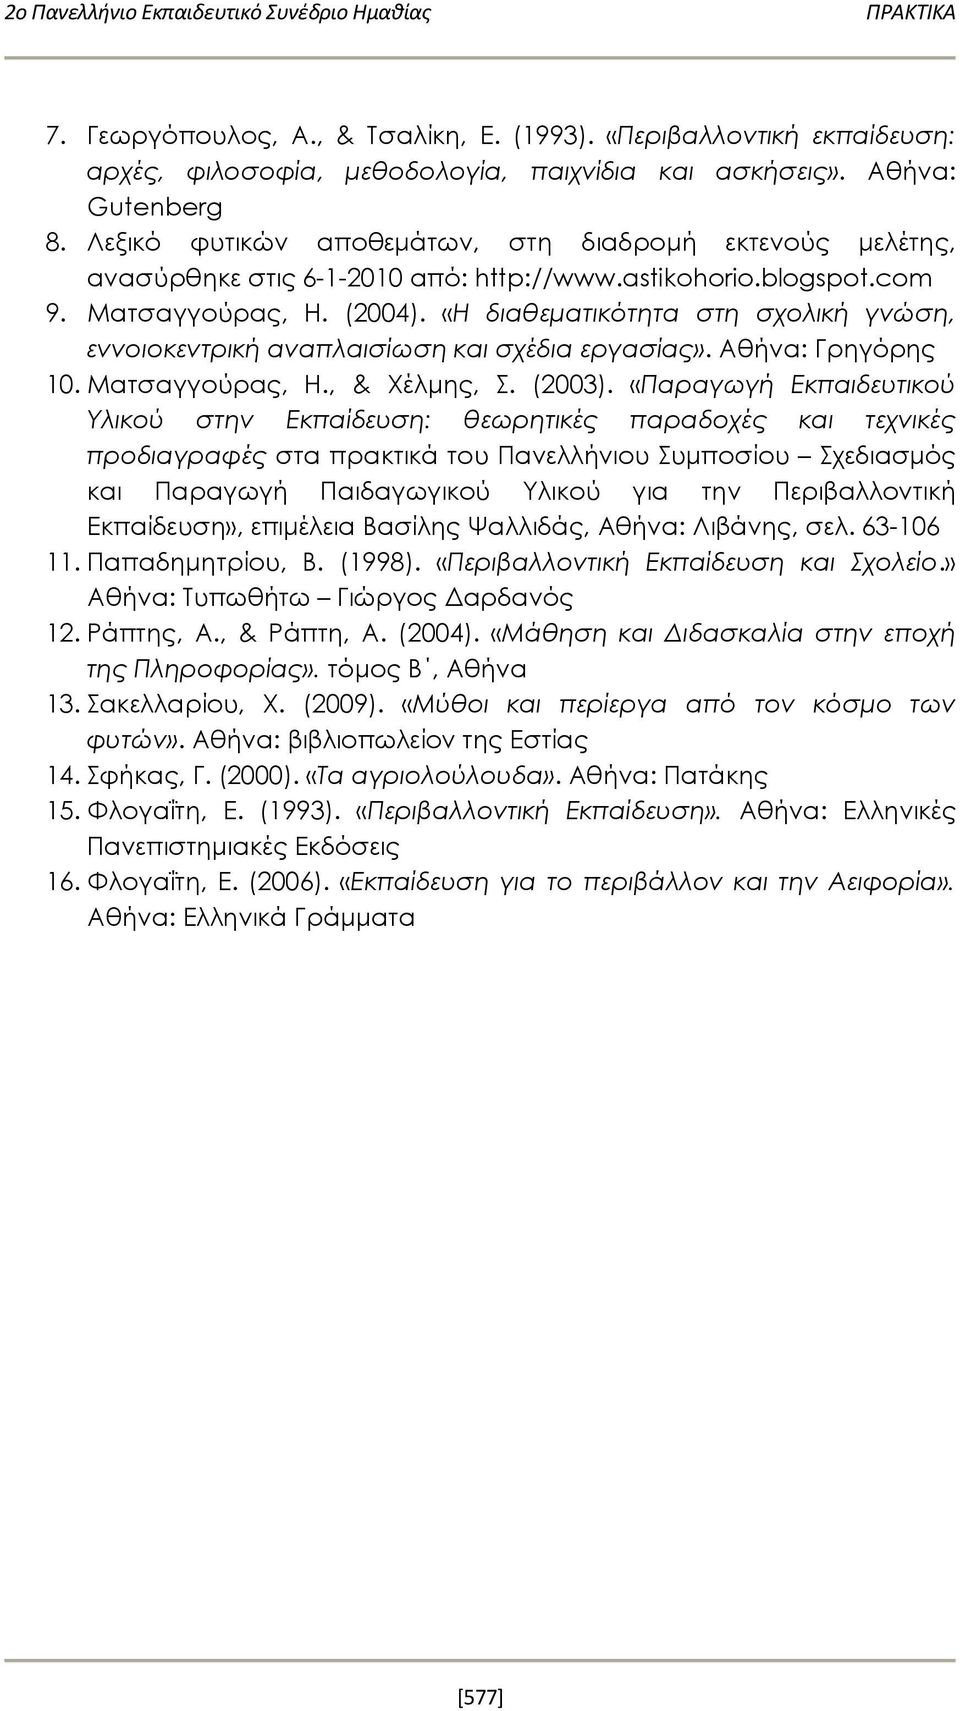 «Η διαθεματικότητα στη σχολική γνώση, εννοιοκεντρική αναπλαισίωση και σχέδια εργασίας». Αθήνα: Γρηγόρης 10. Ματσαγγούρας, Η., & Χέλμης, Σ. (2003).